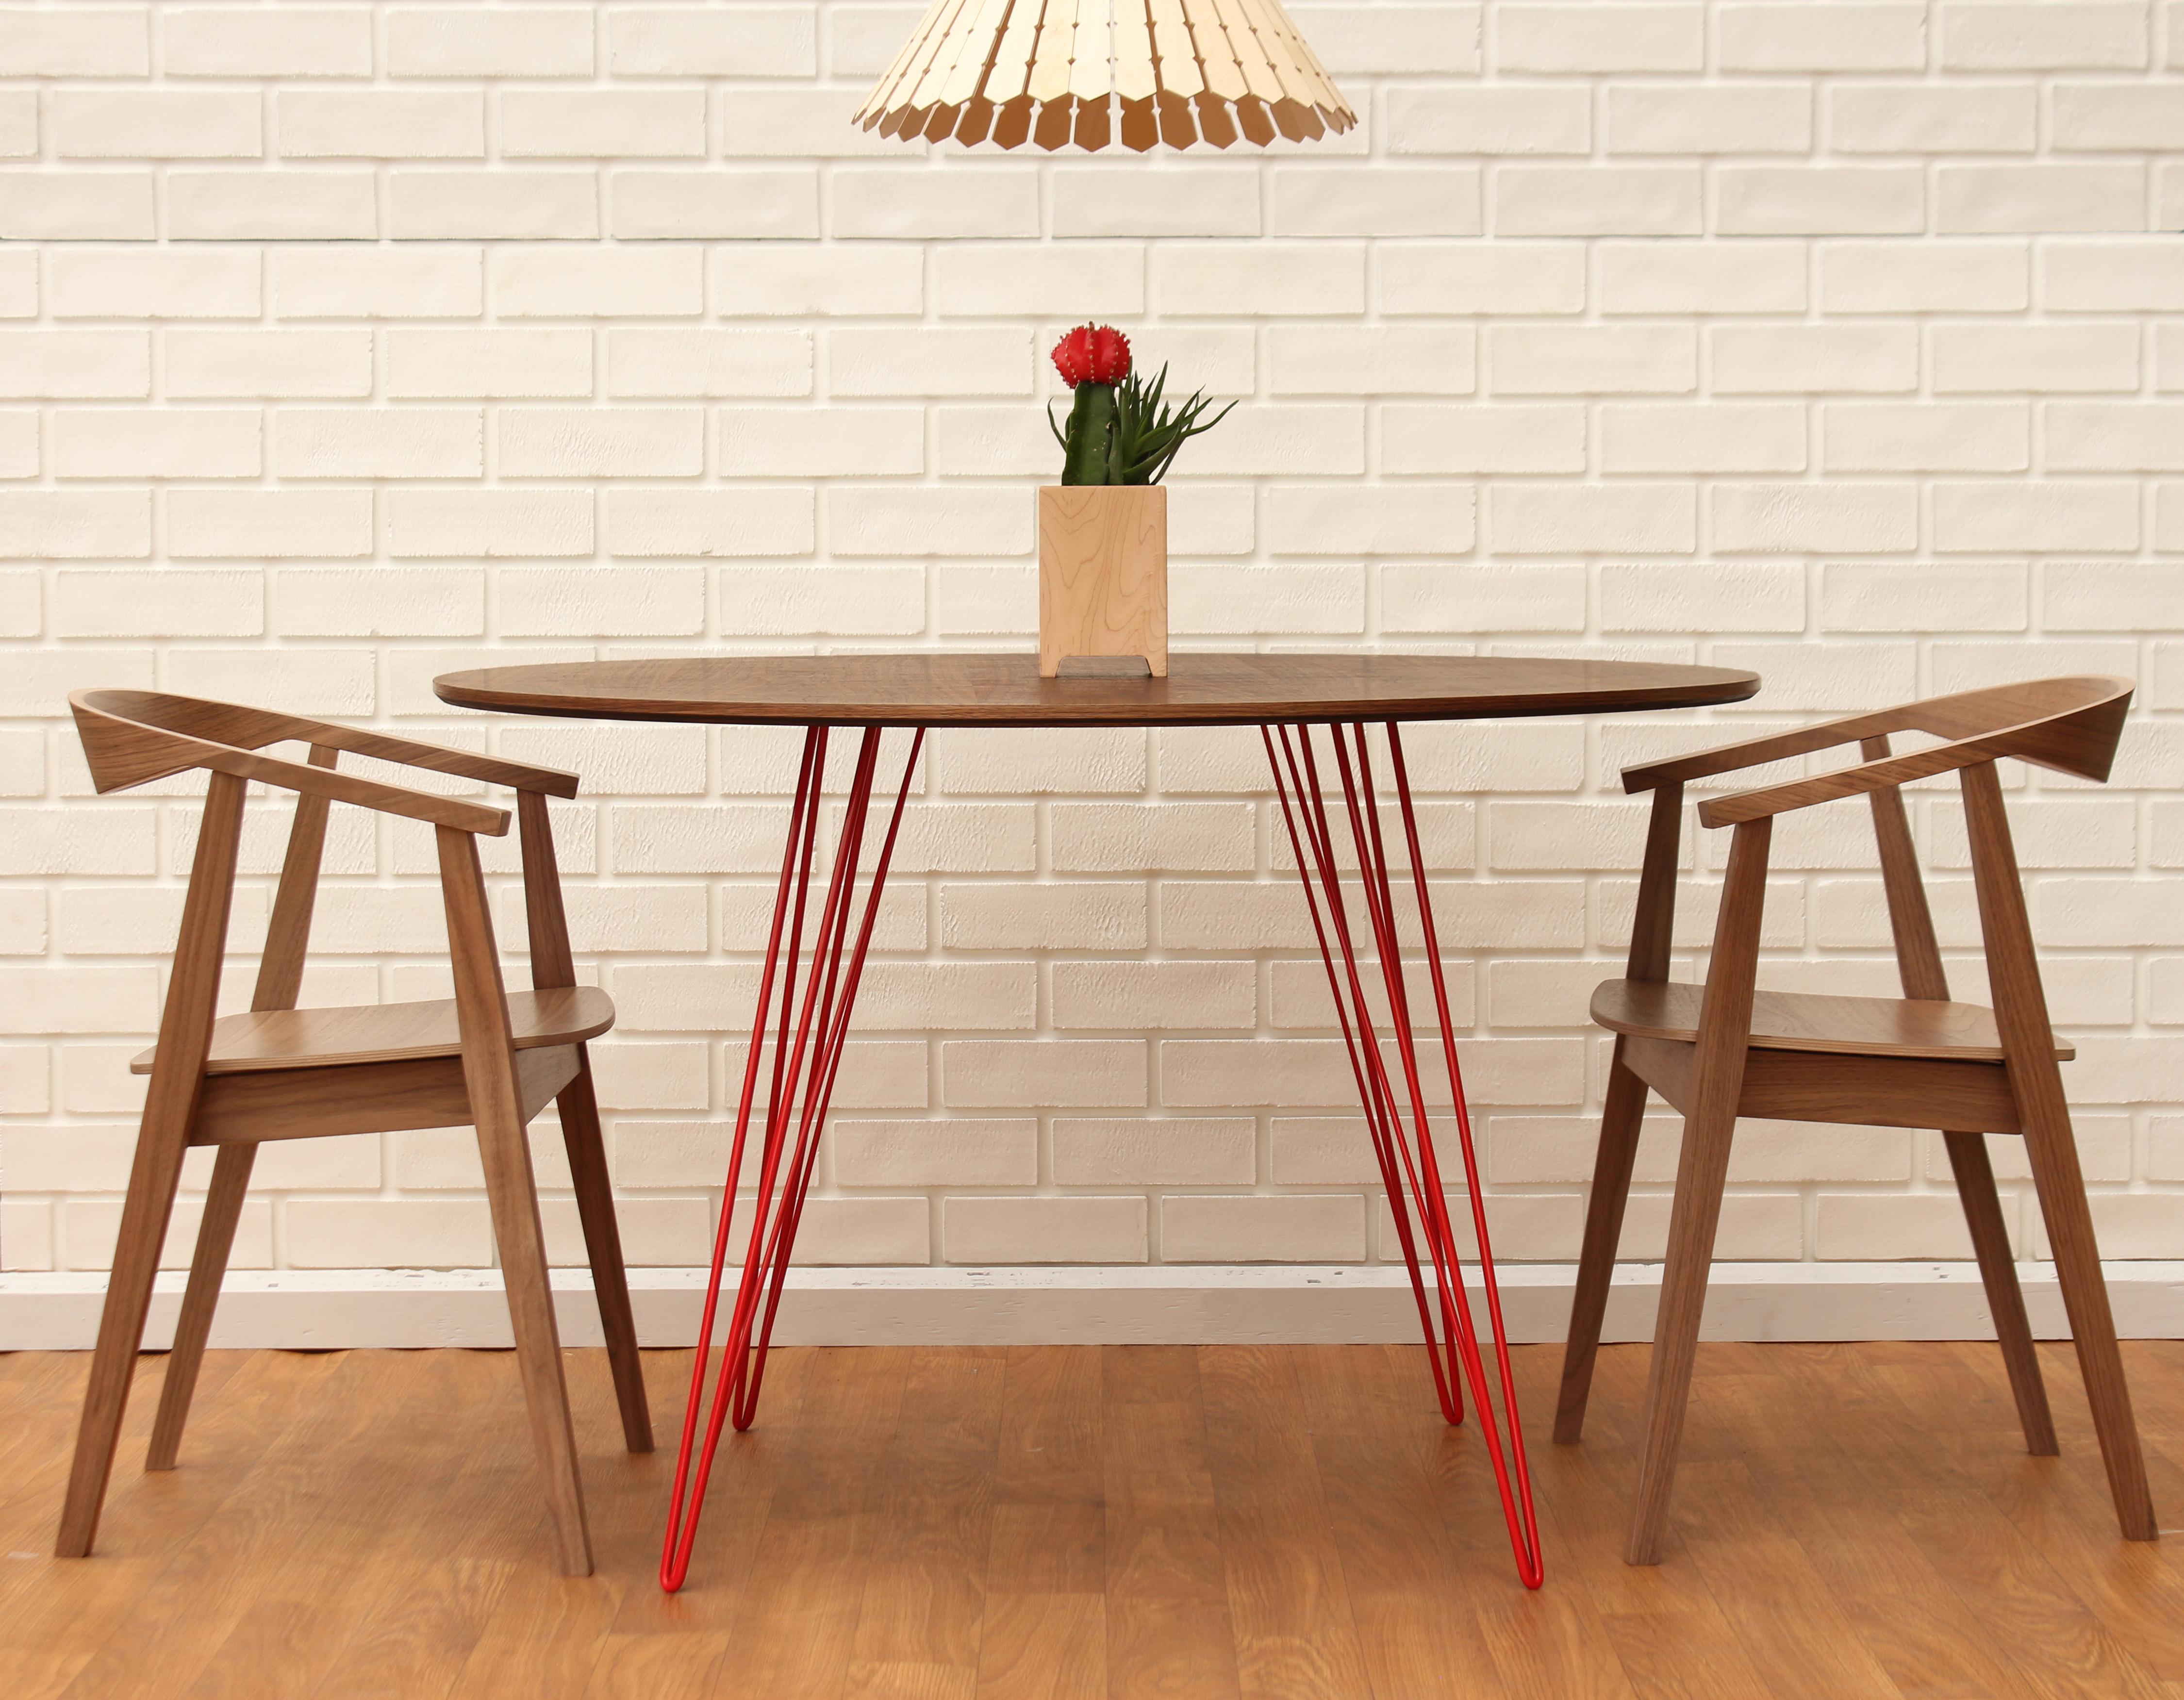 Ein schlanker, eleganter und leichter Tisch, der in Form, Größe und Farbe individuell angepasst werden kann. Dieses handgefertigte Möbelstück kombiniert perfekt industrielle Haarnadelbeine mit einer abgeschrägten Holzplatte. Die unregelmäßige